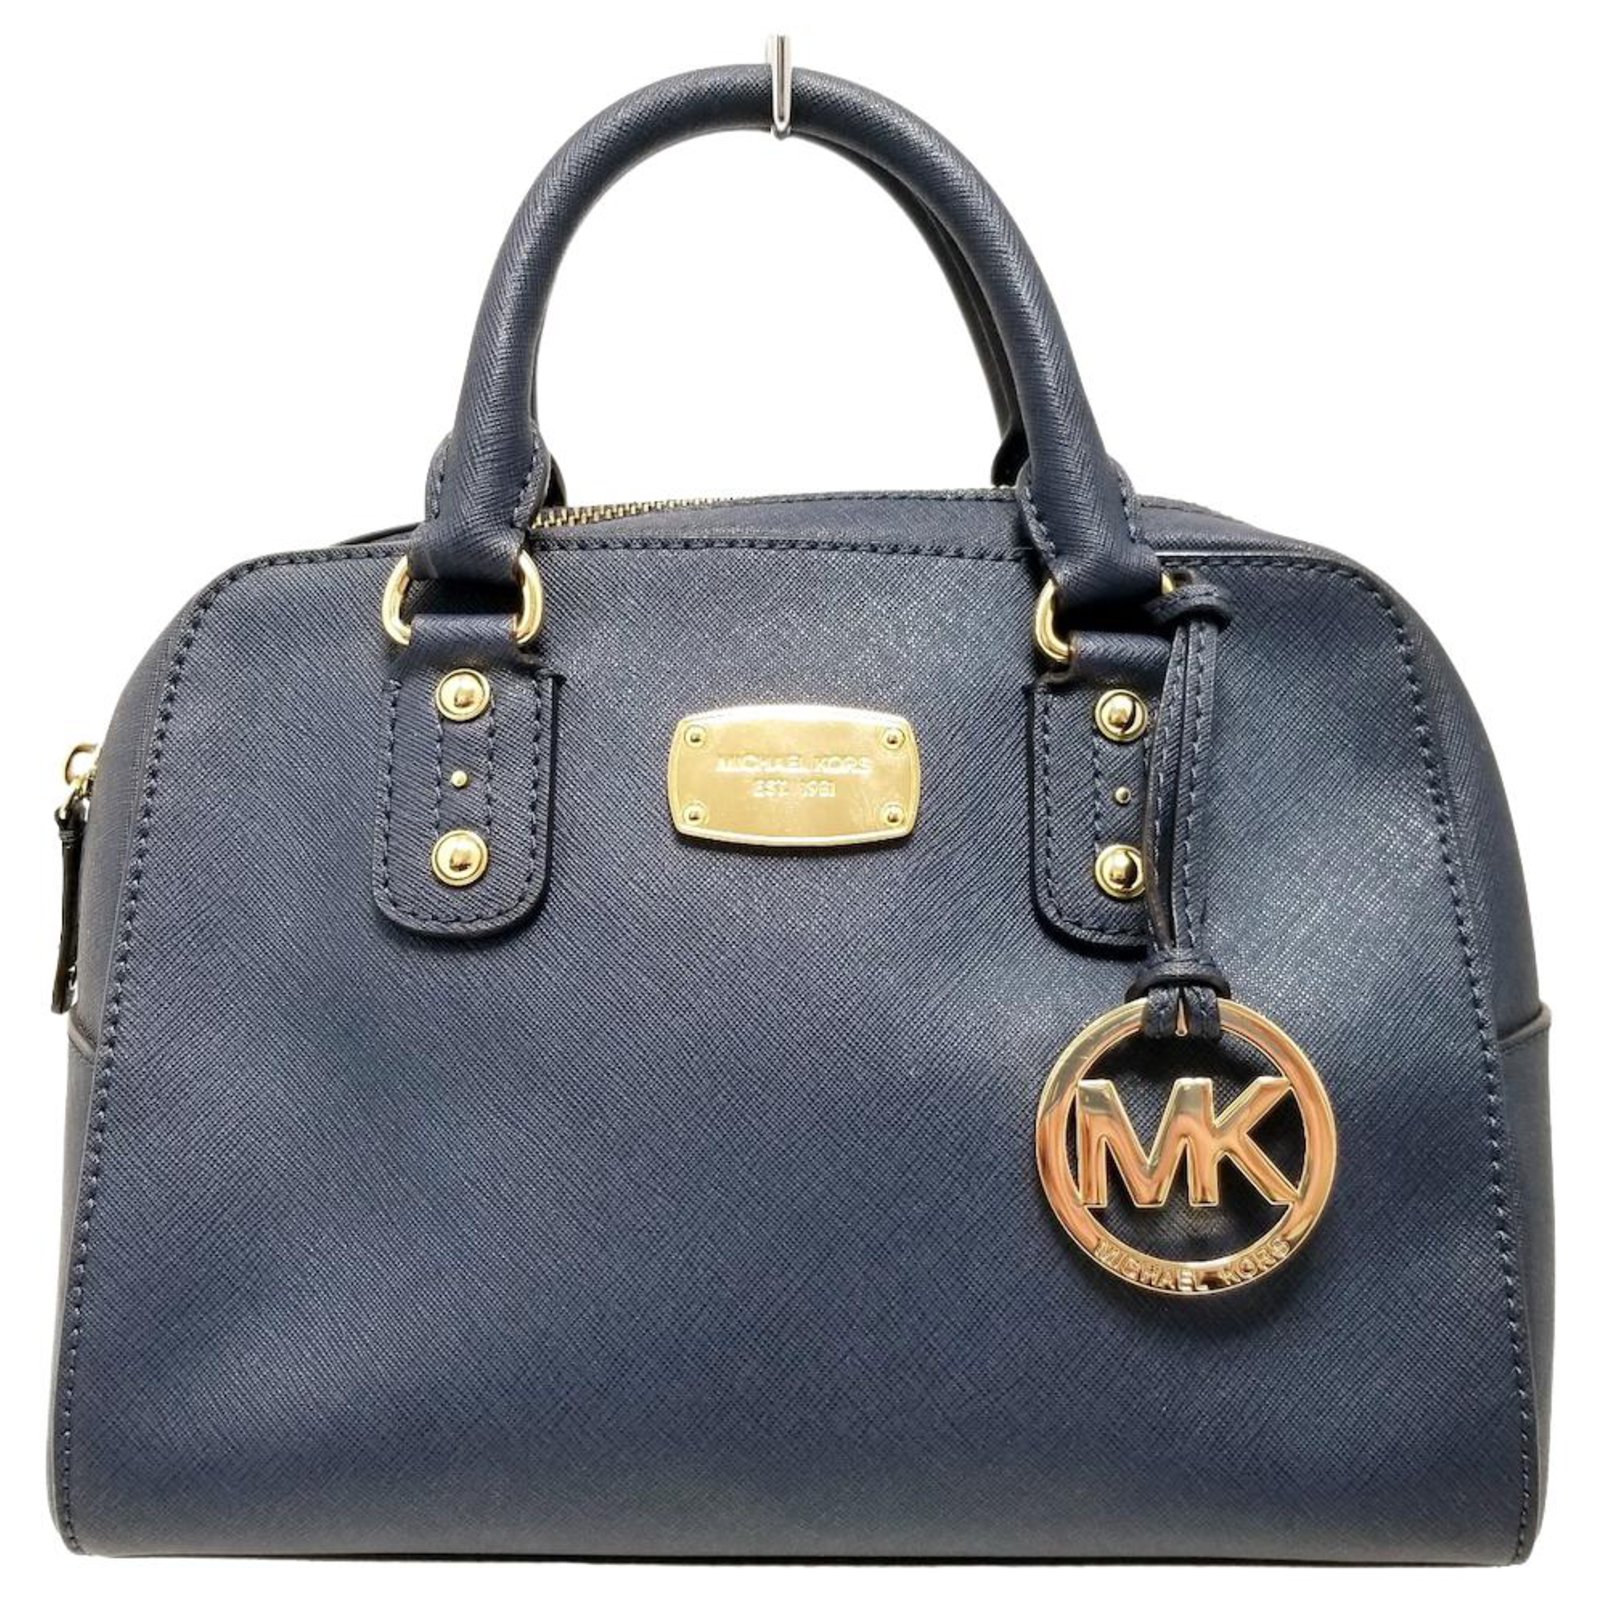 MK navy blue handbag